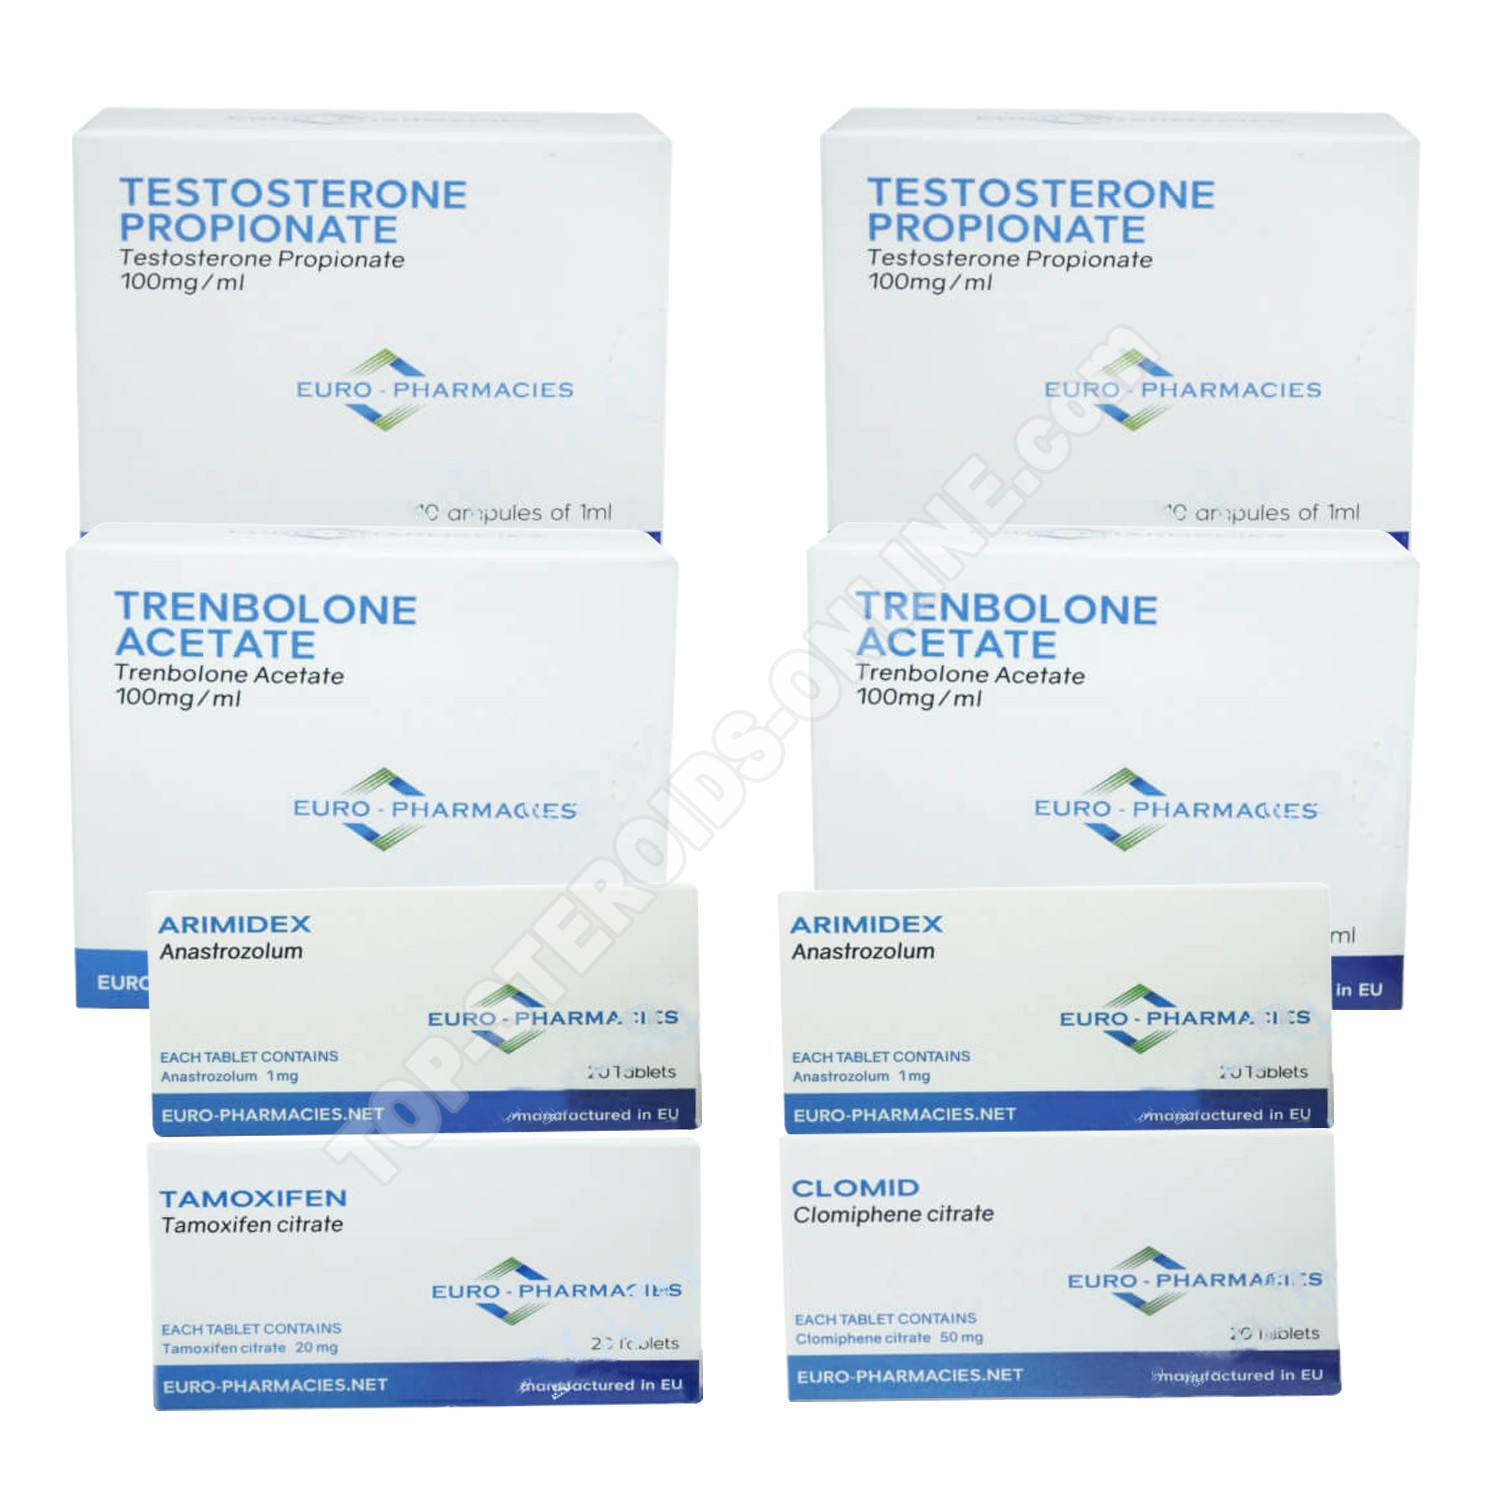 Oxiged 50 mg Euro Prime Farmaceuticals (Tabletten) ein für alle Mal loswerden